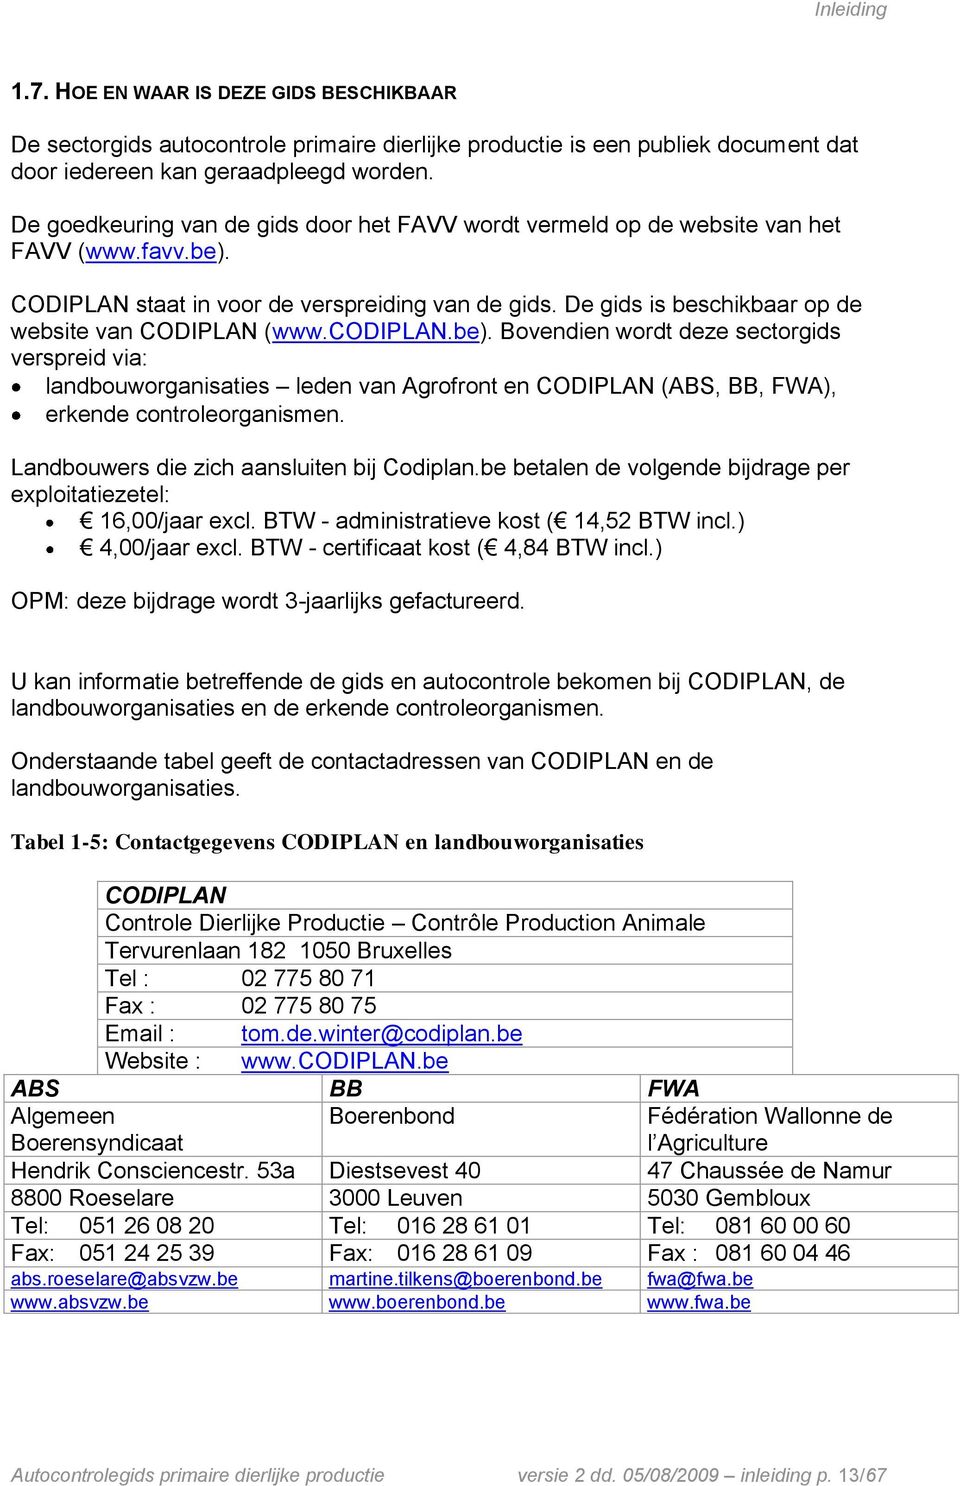 De gids is beschikbaar op de website van CODIPLAN (www.codiplan.be).